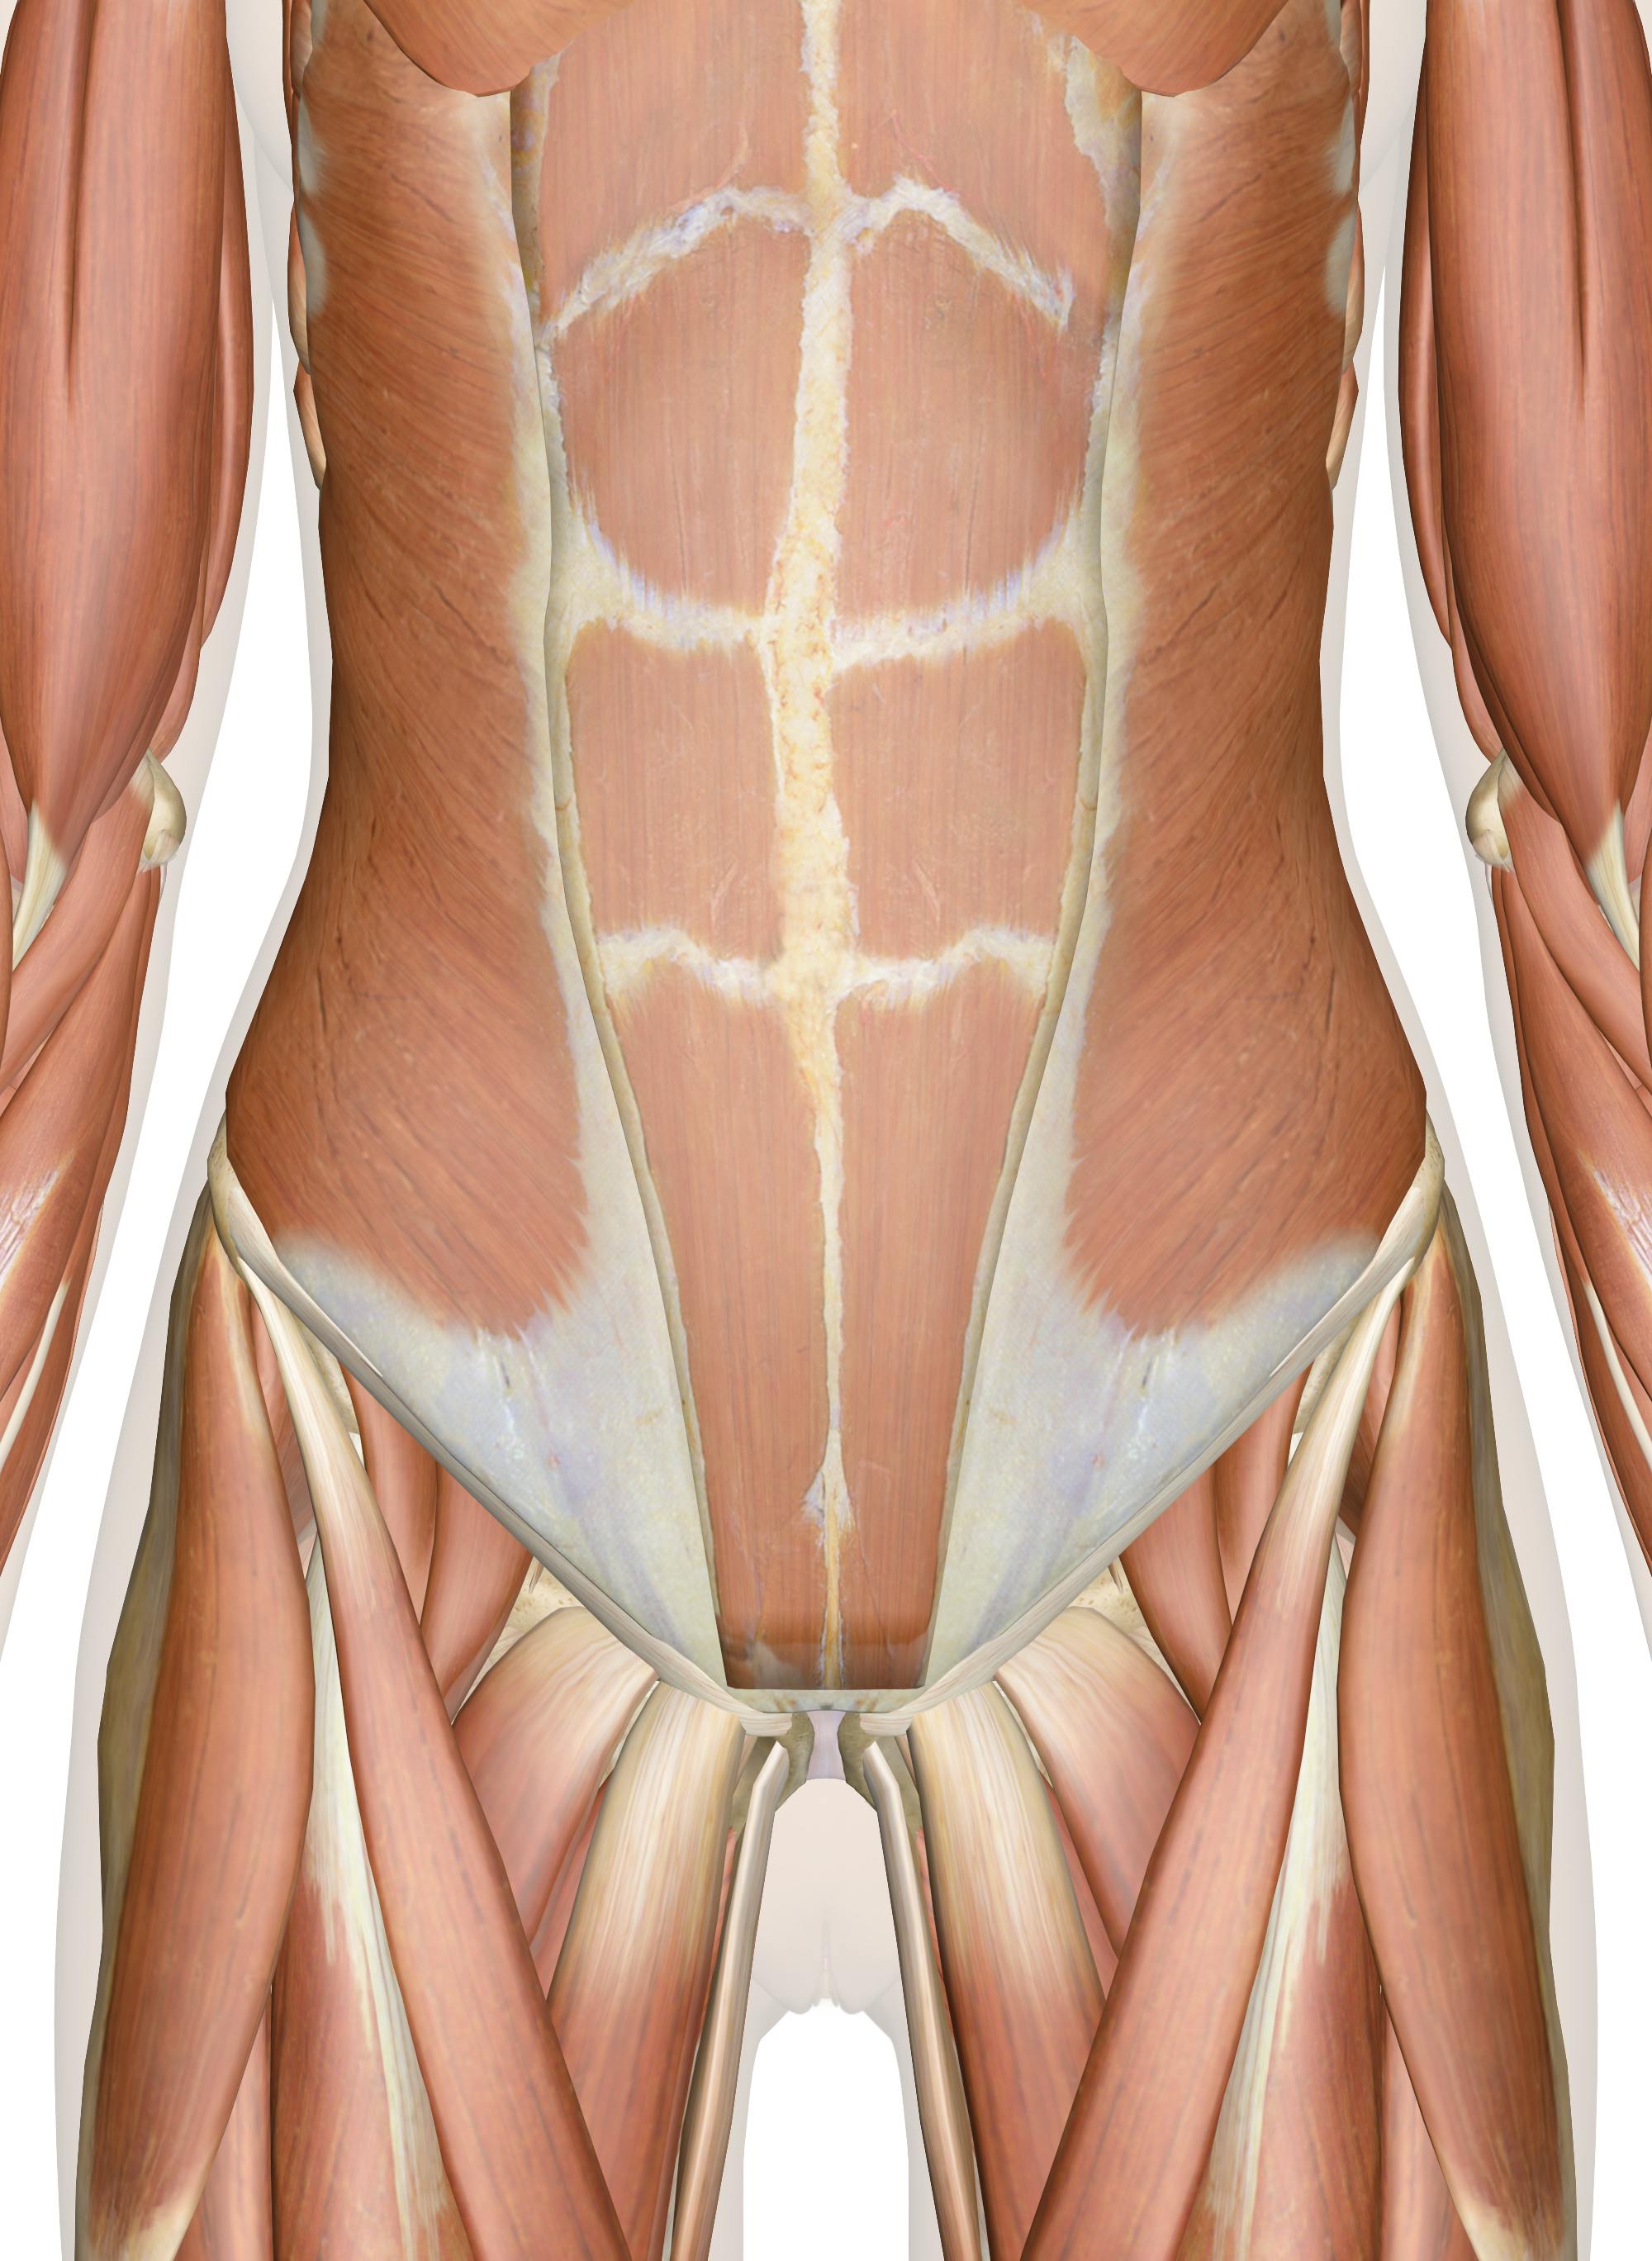 https://innerbody.imgix.net/muscles_abdomen_lower_back_pelvis.png